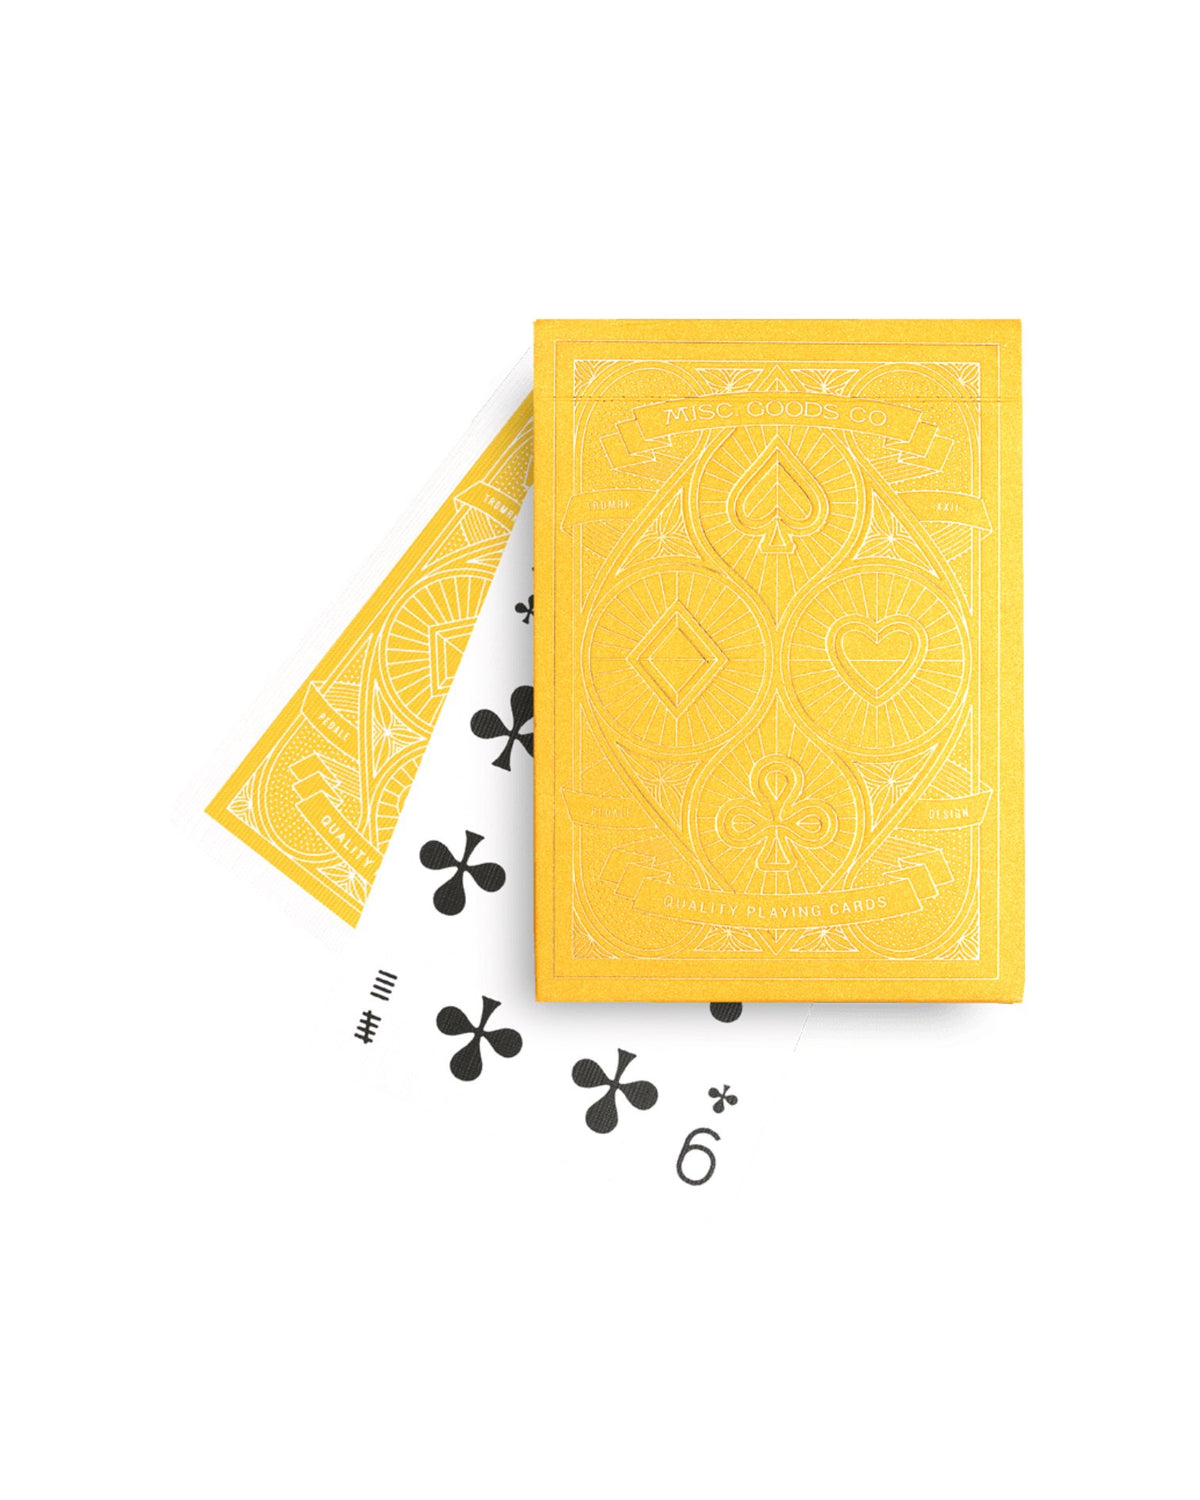 Playing Cards / Sunrise